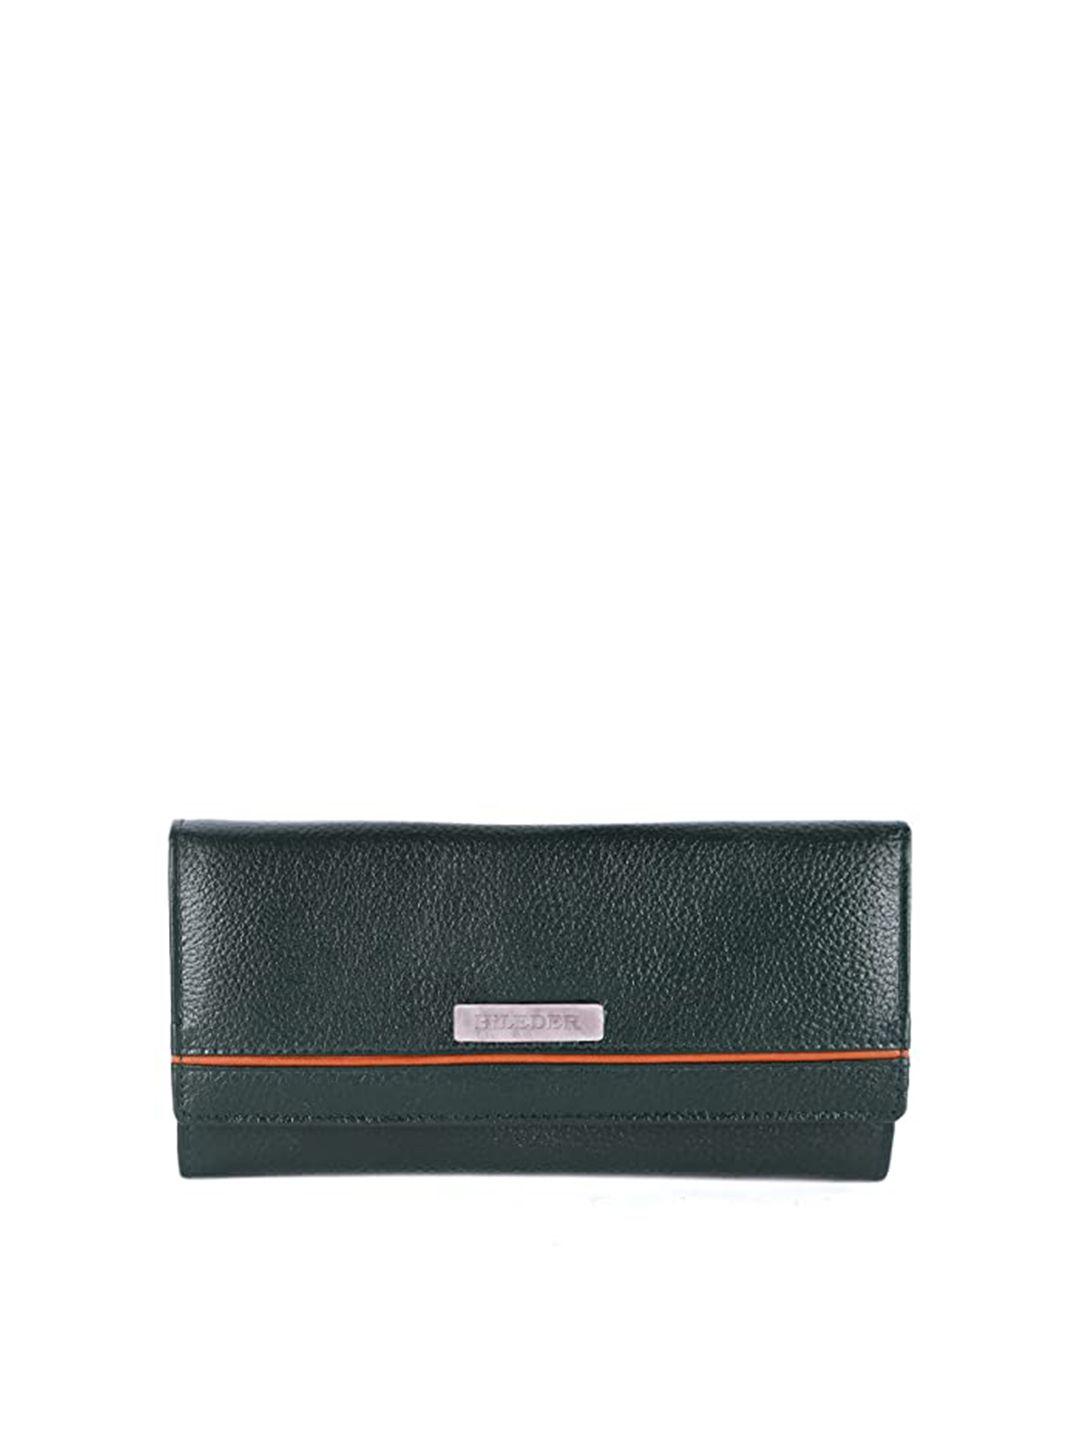 hileder textured leather envelope wallet